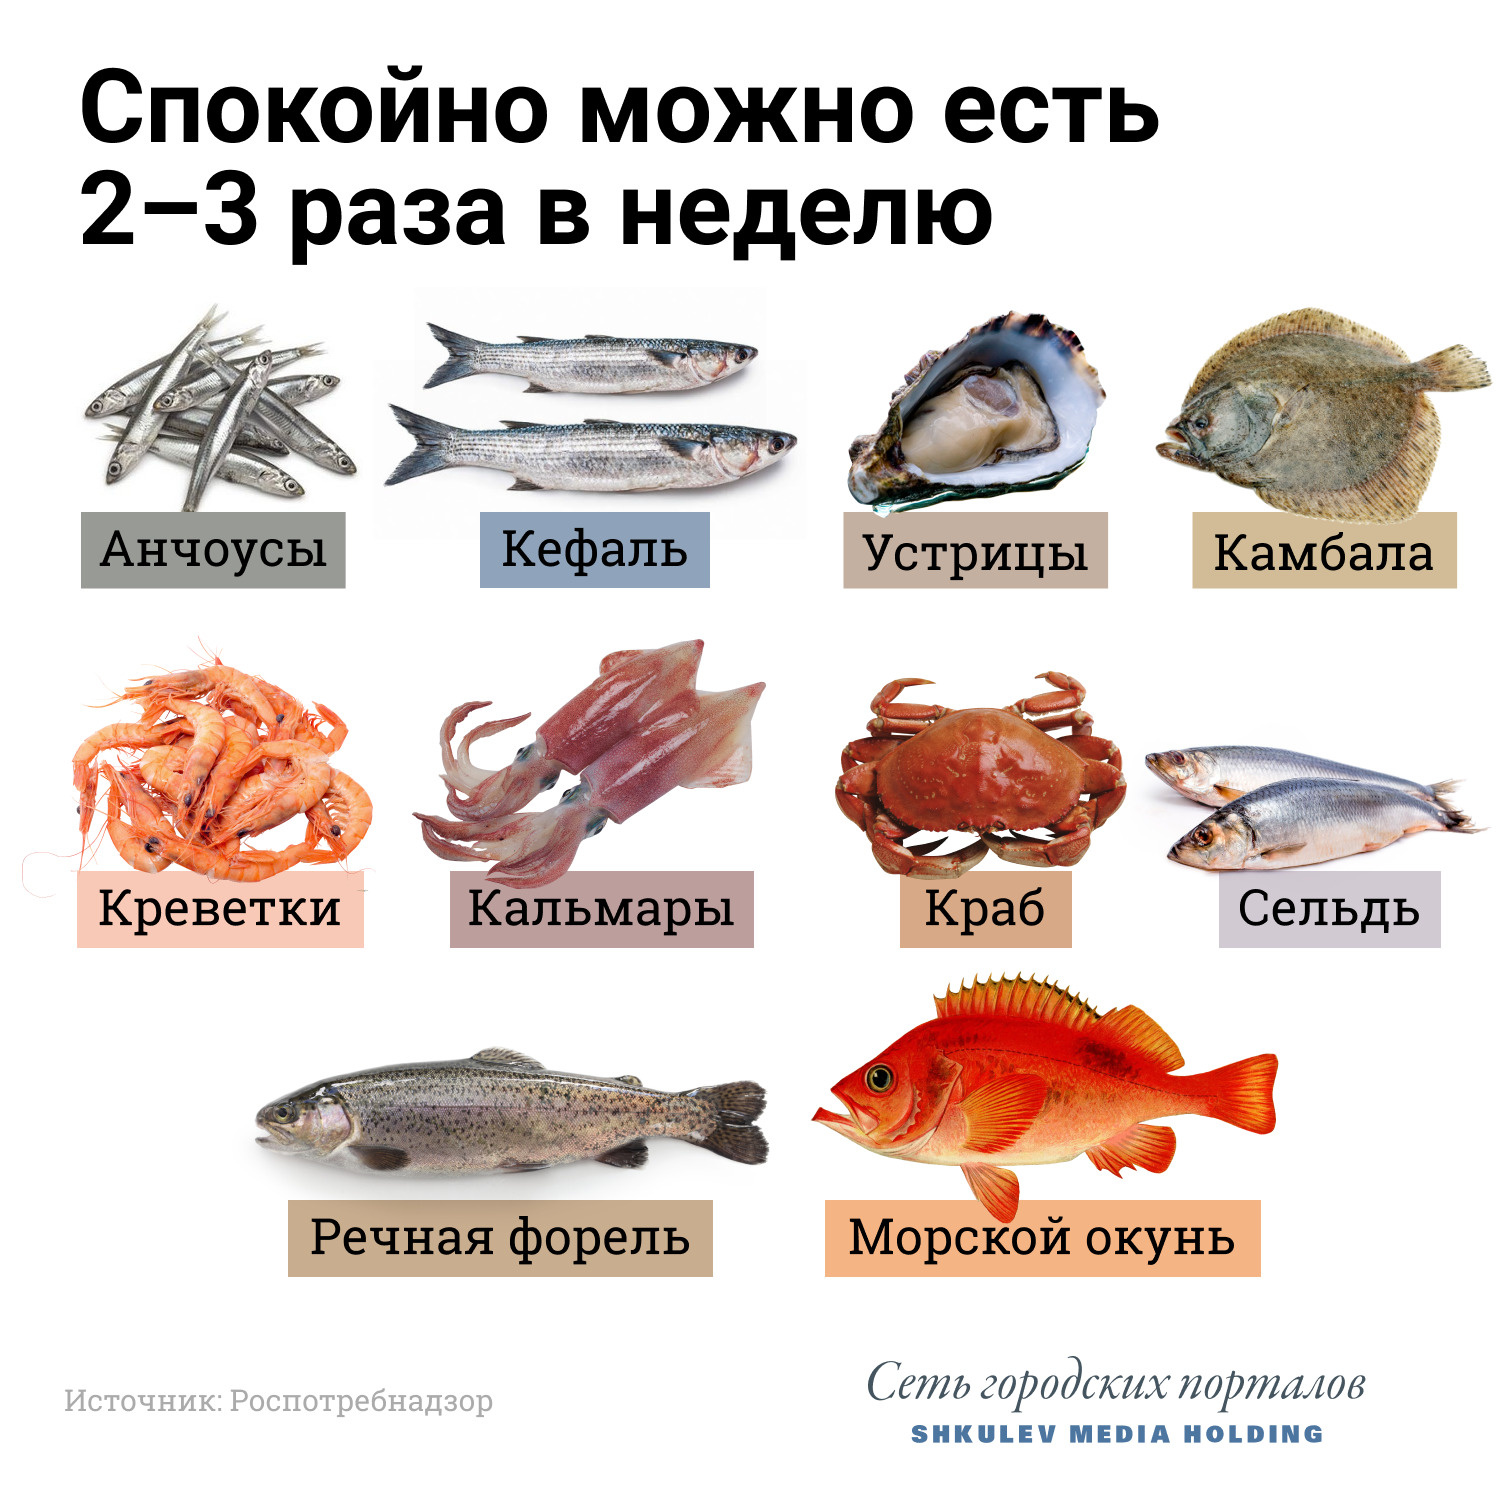 😃 Красивые фотографии разных рыб с названиями - морские, речные.